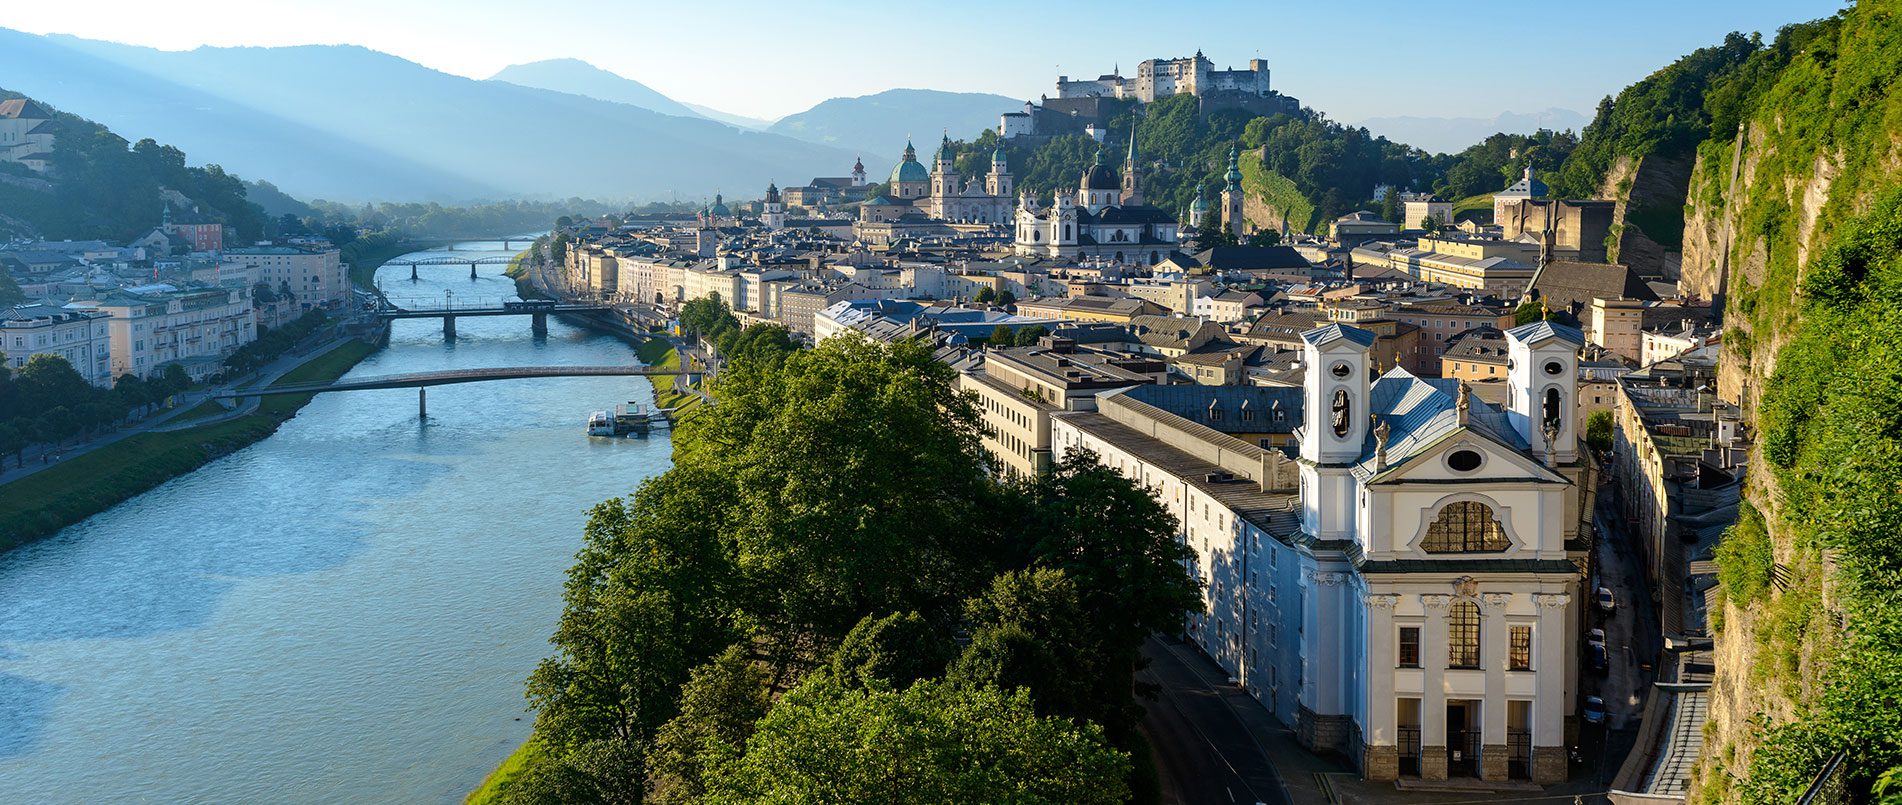 Ausflugsziele im Salzburger Land, Altstadt Salzburg